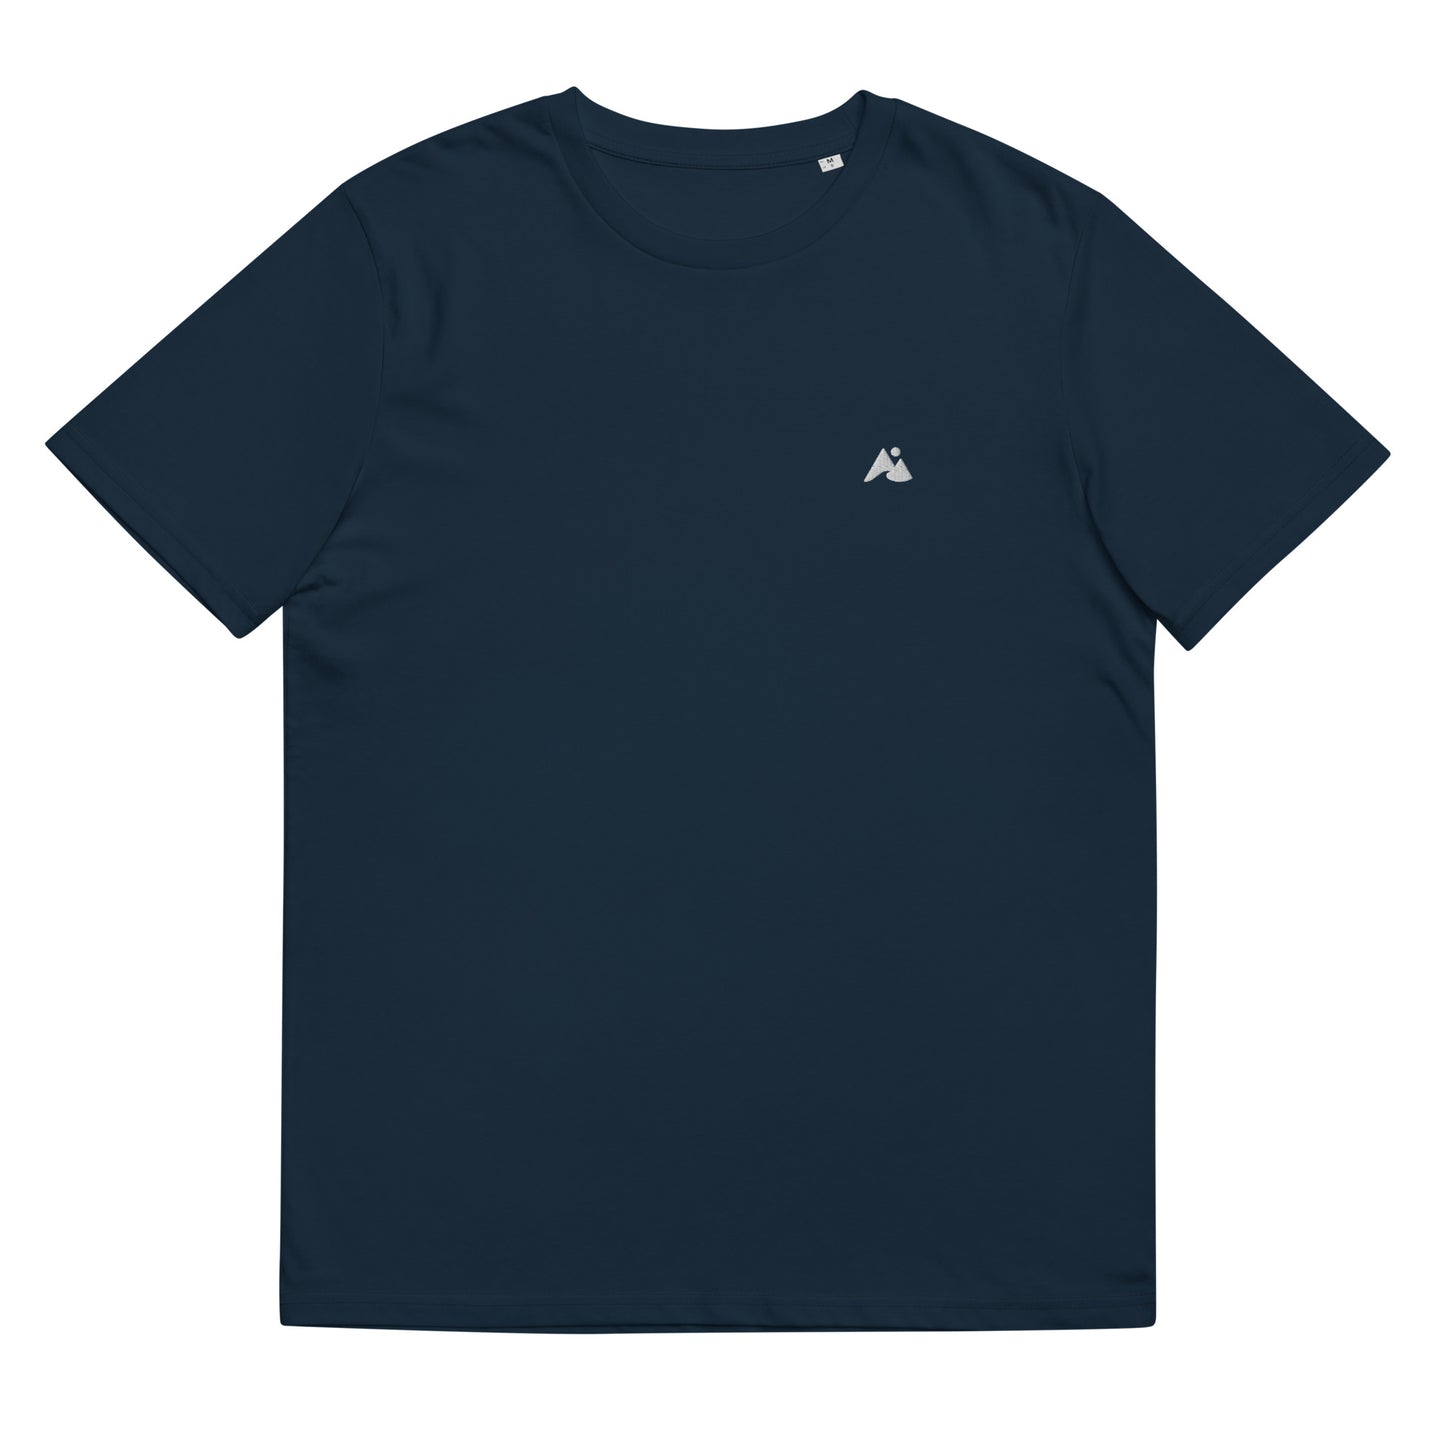 Il s'agit d'une image d'un t-shirt unisexe de couleur bleu marine. Le t-shirt est présenté sur un fond blanc. Il y a un petit logo montagne et vague blanc sur la poitrine côté cœur.